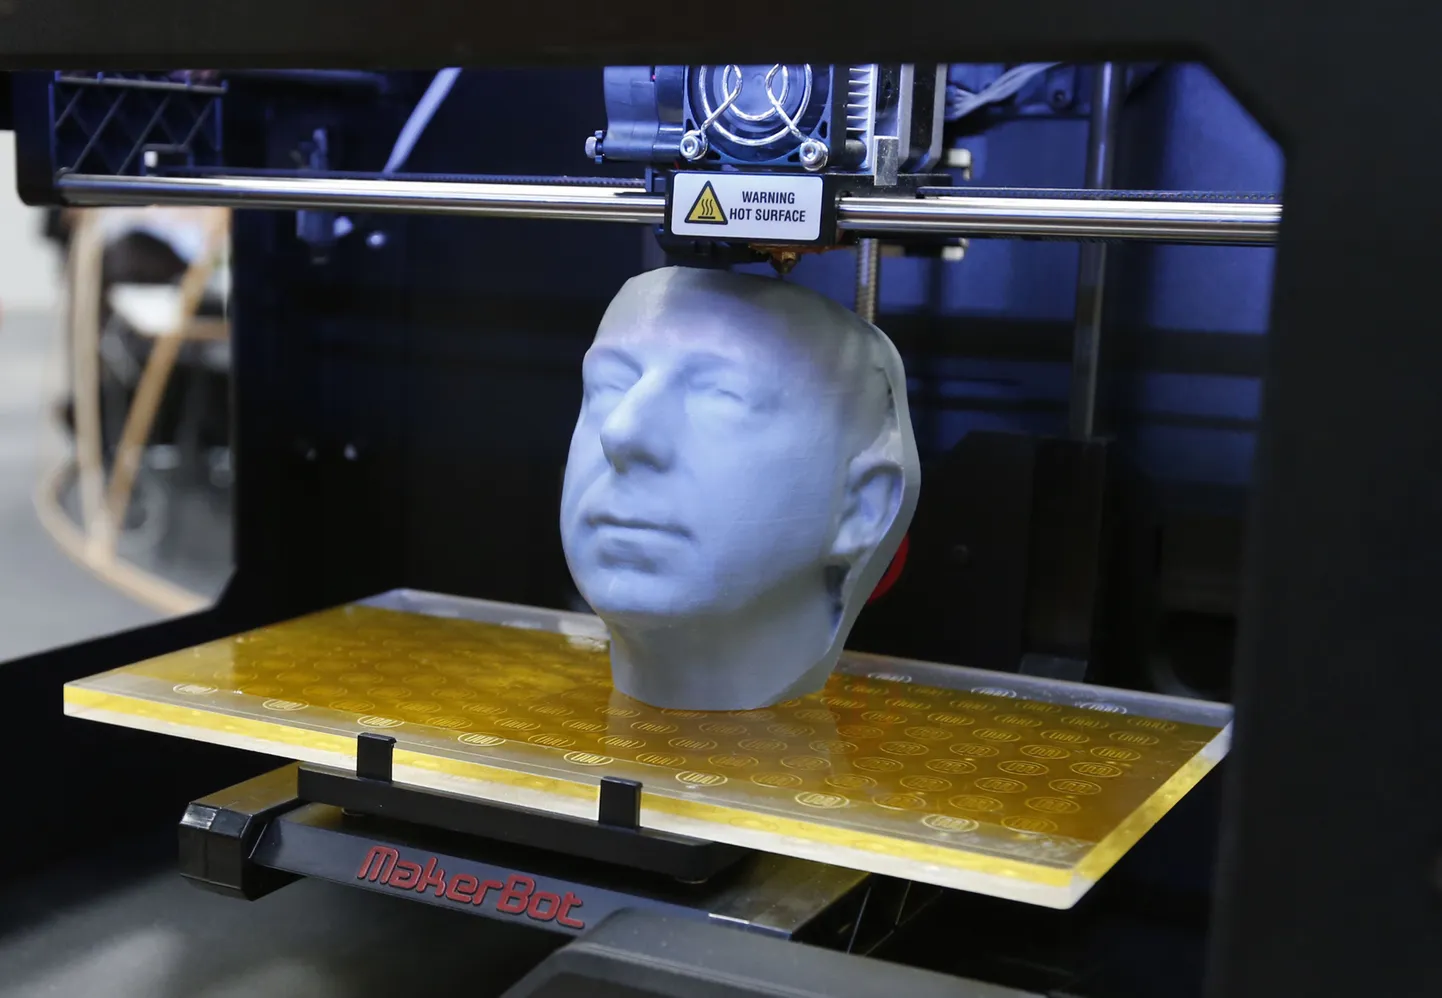 3D printer MakerBot Replicator 2